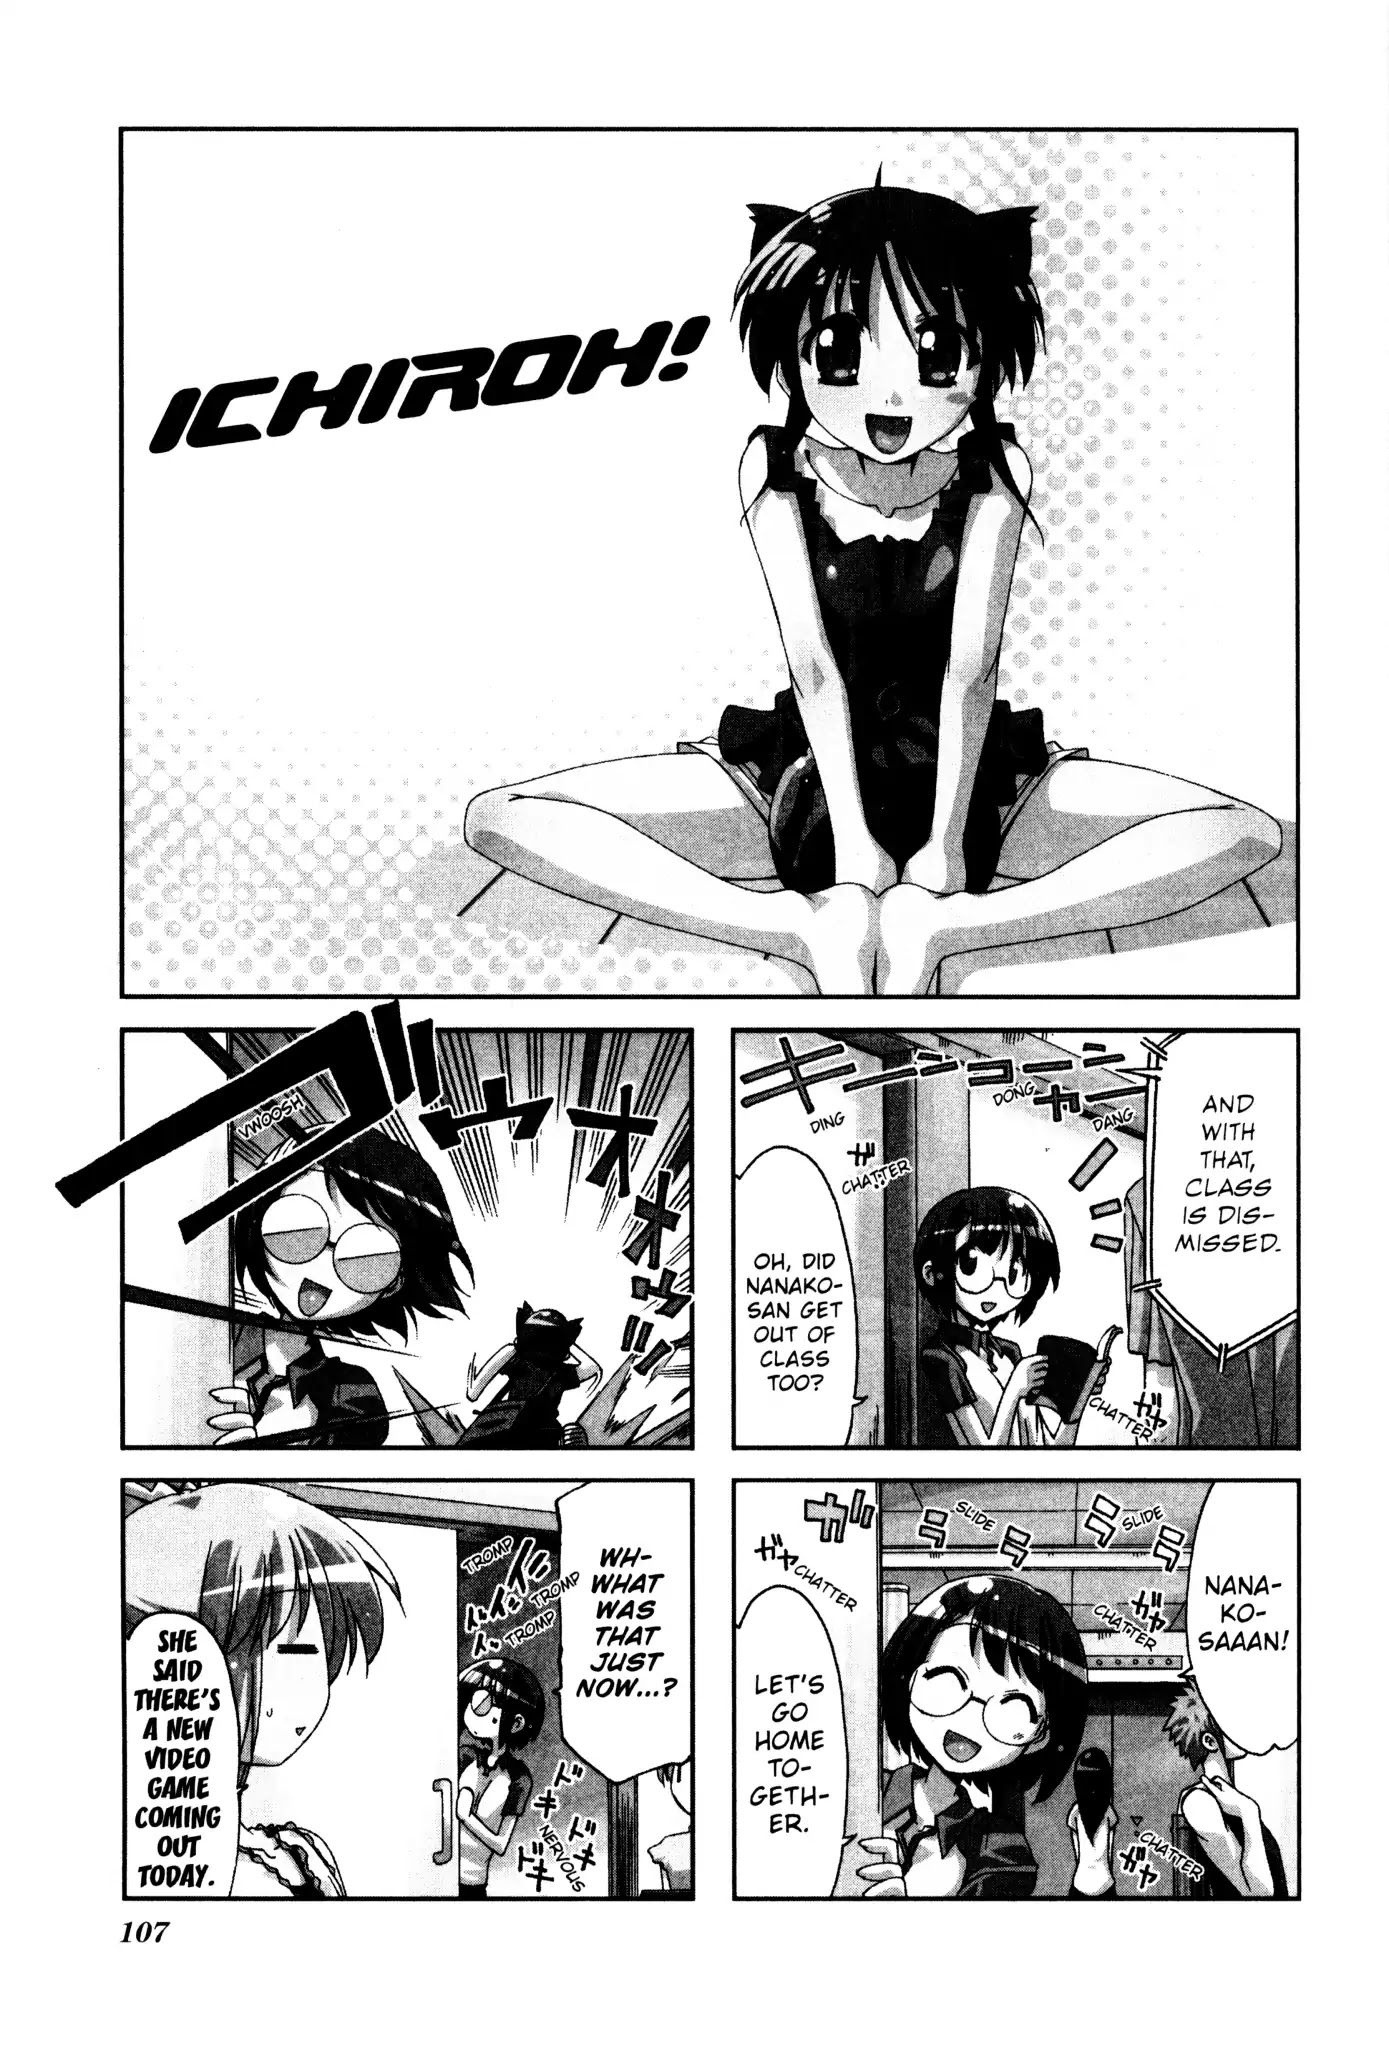 Ichiroh! Chapter 31 #1